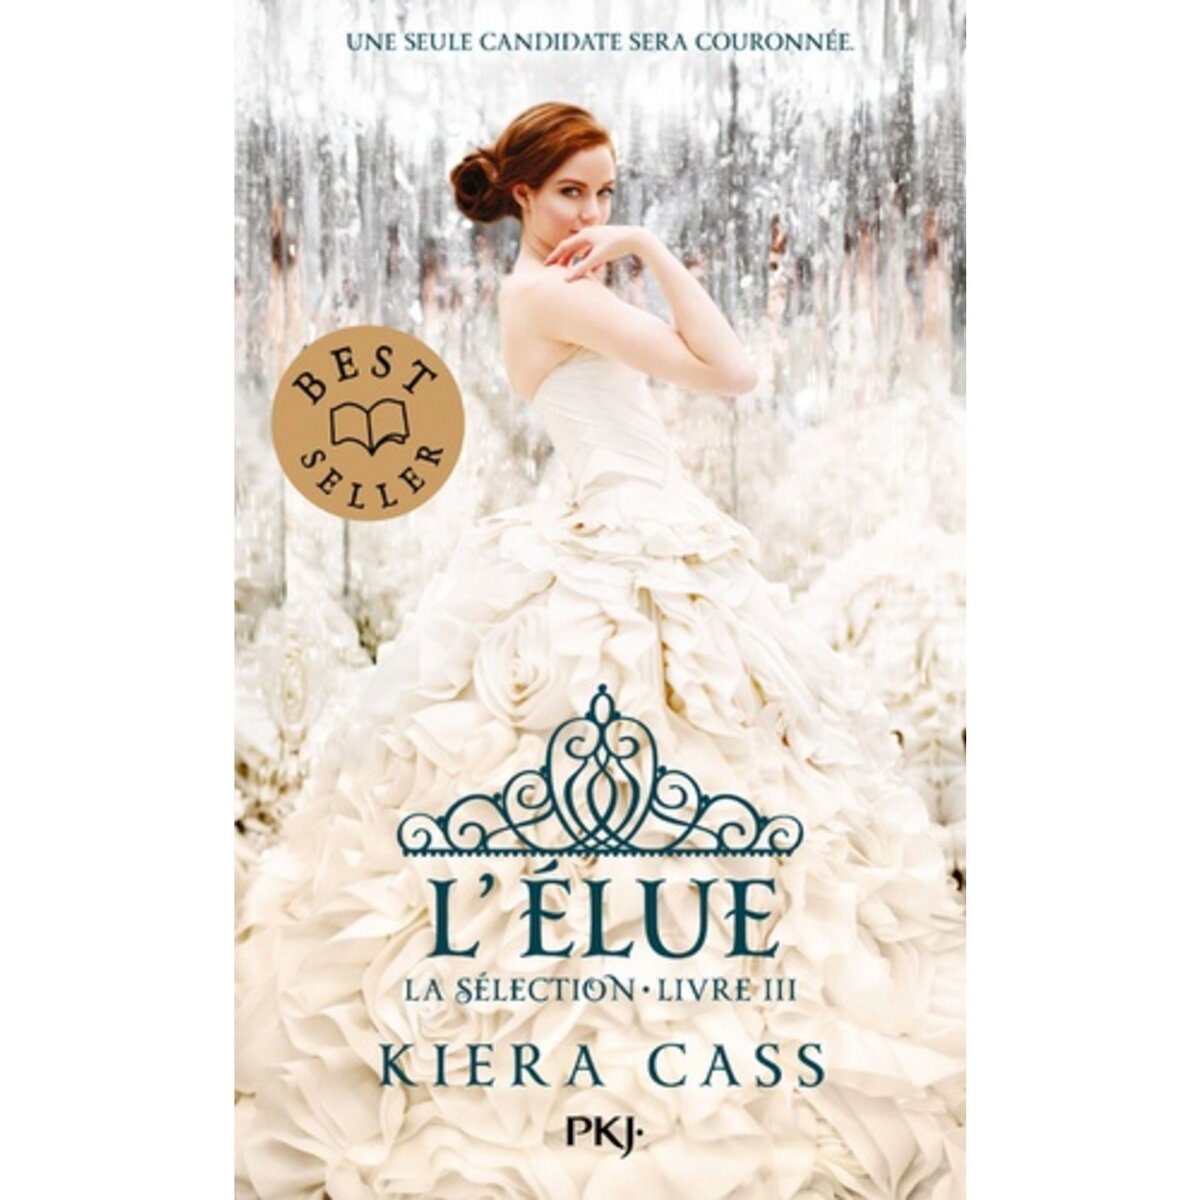  LA SELECTION TOME 3 : L'ELUE, Cass Kiera